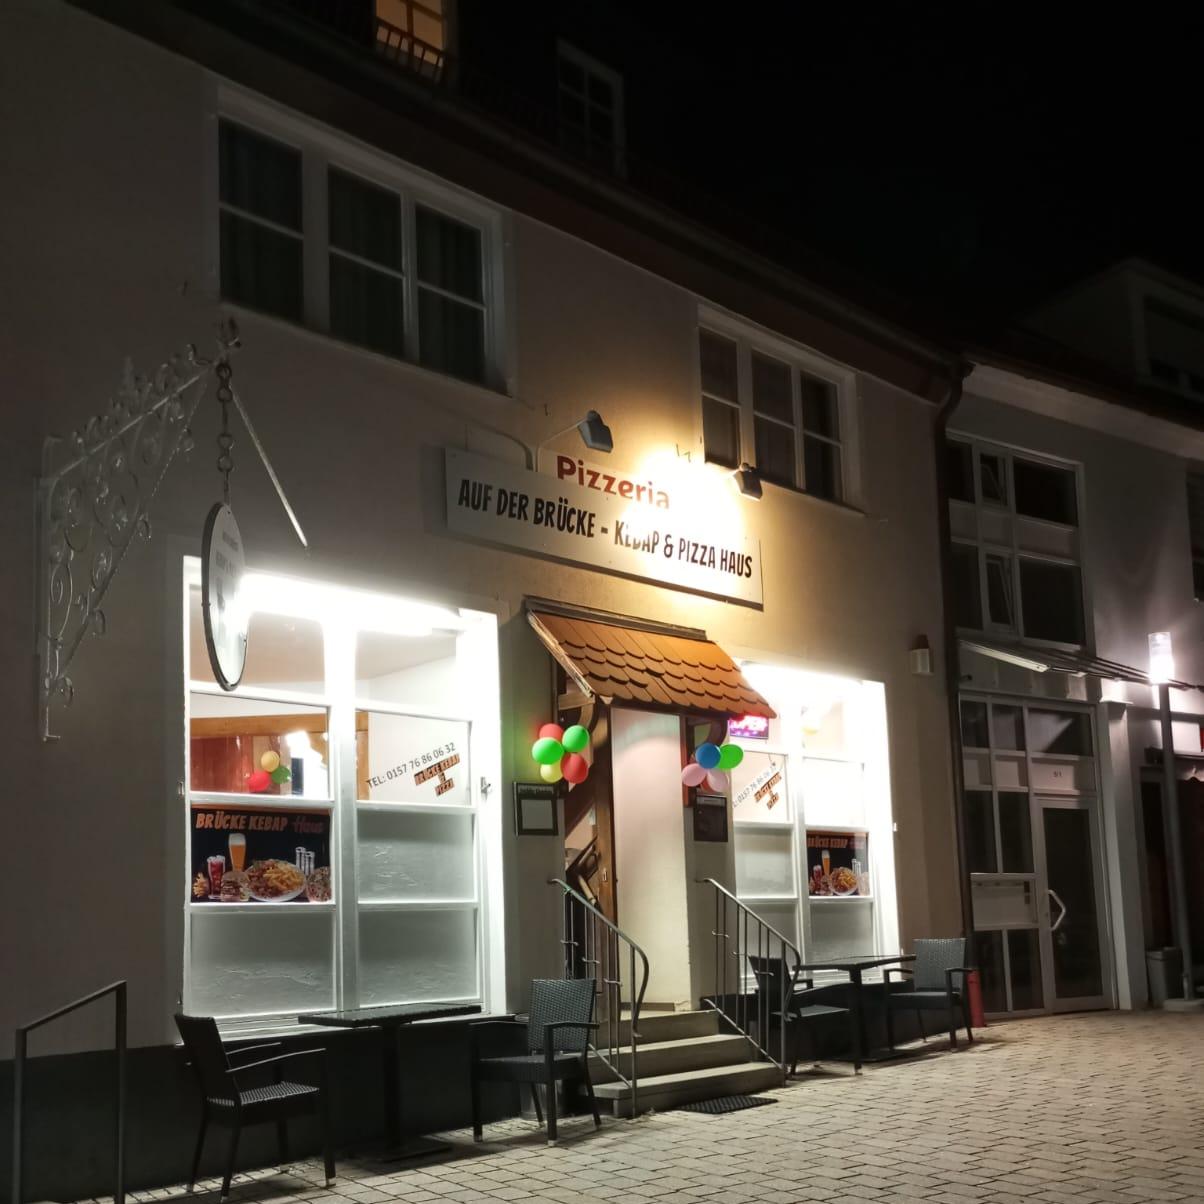 Restaurant "Auf der Brücke - Kebap & Pizza Haus" in Beuren